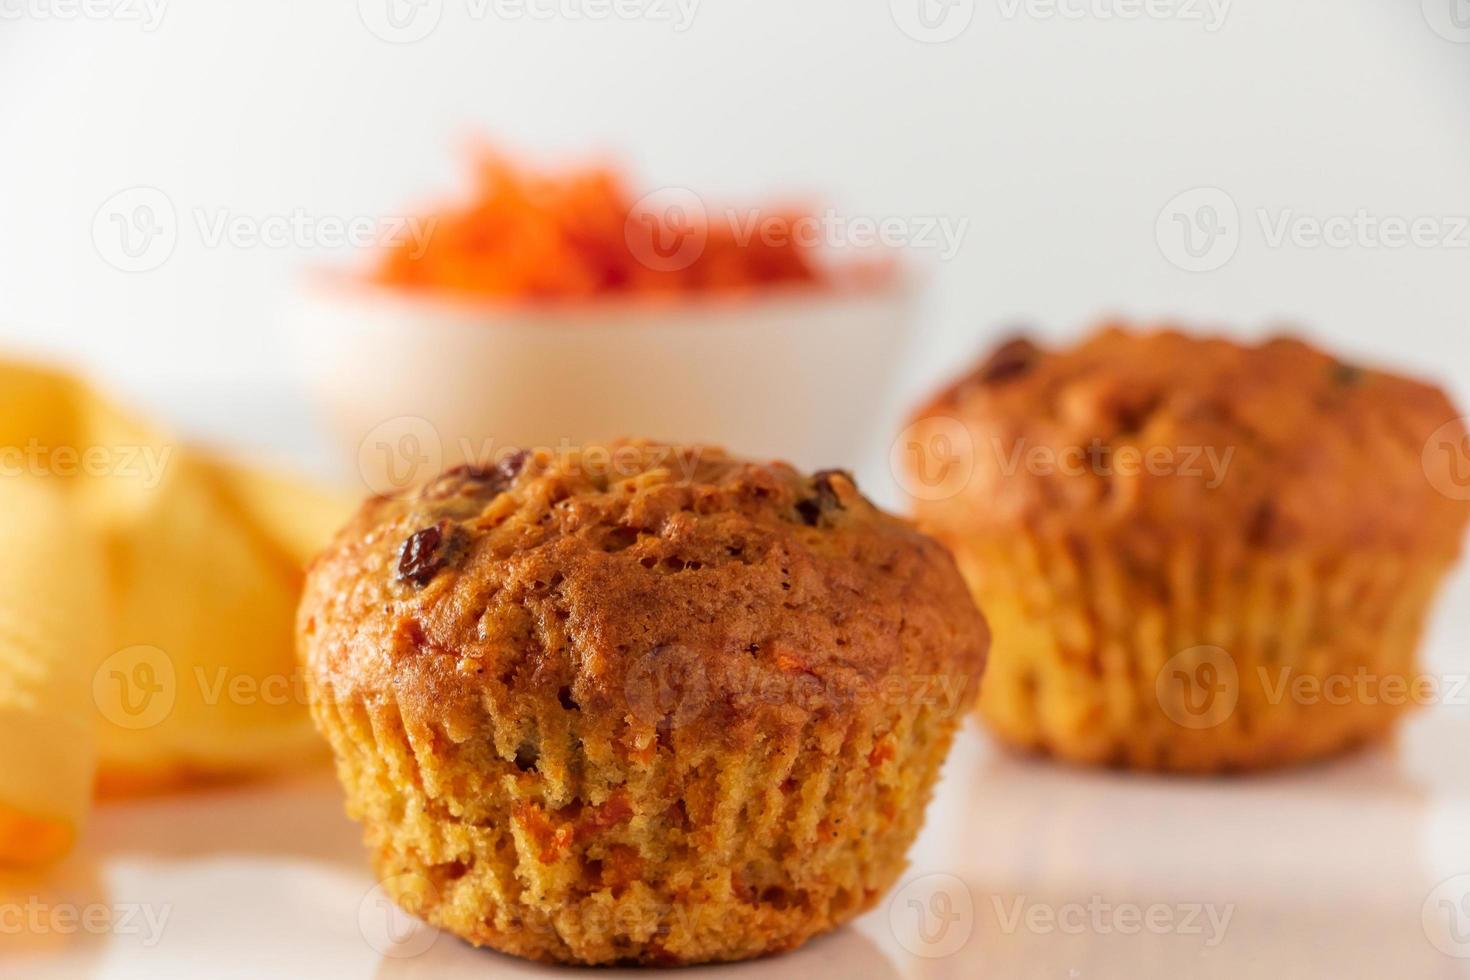 pumpa muffins på en vit bakgrund. hemlagade grönsakskakor för en hälsosam kost. säsongsbetonad höstbakning. foto